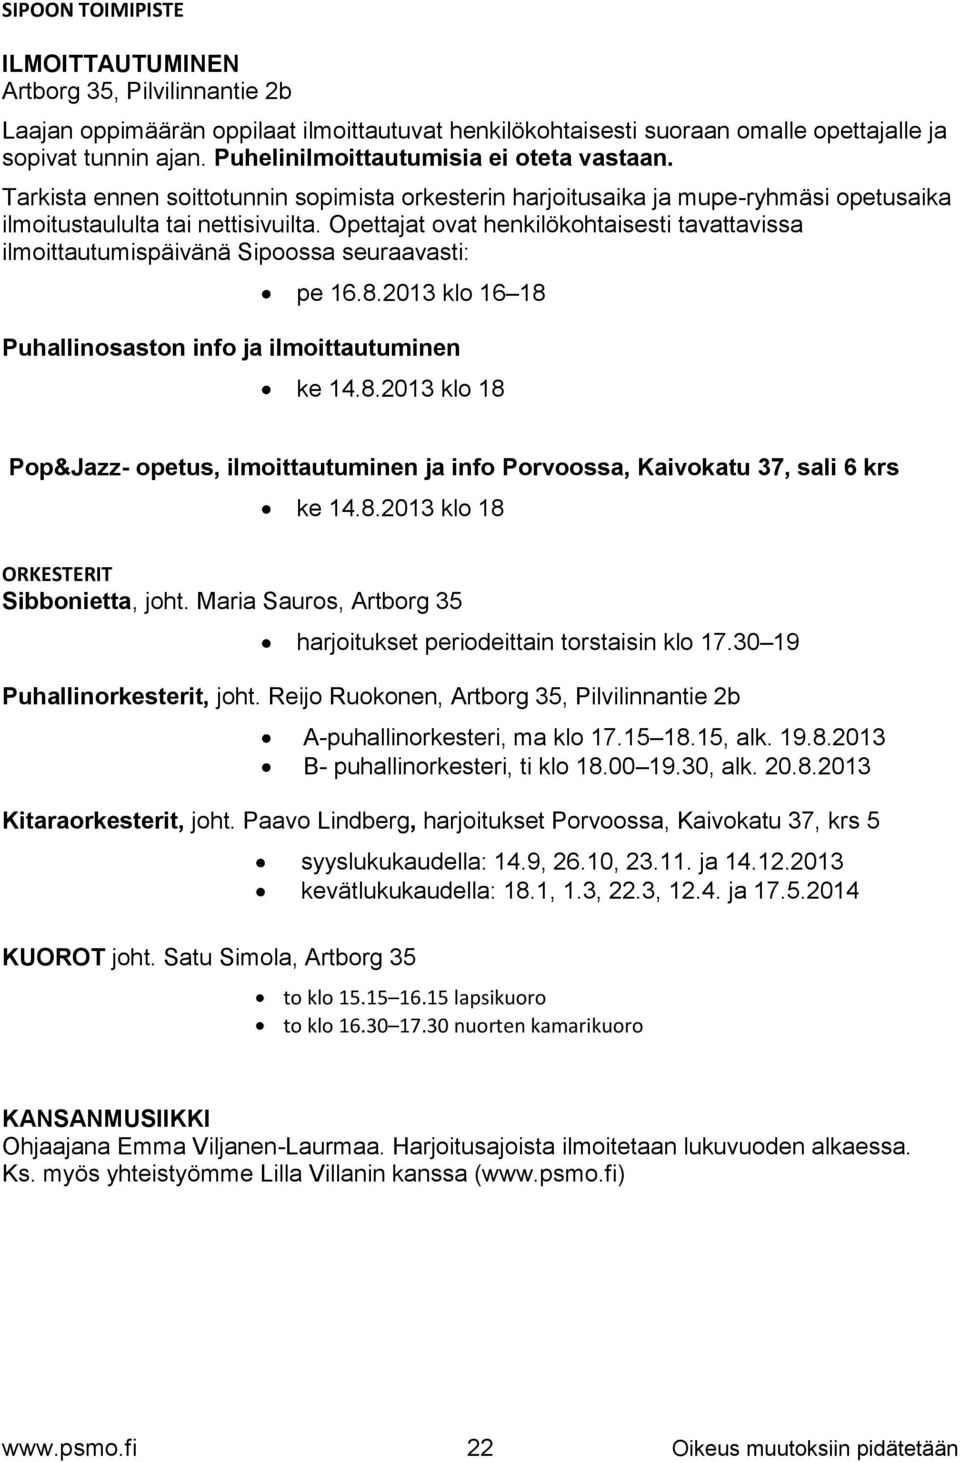 Opettajat ovat henkilökohtaisesti tavattavissa ilmoittautumispäivänä Sipoossa seuraavasti: pe 16.8.2013 klo 16 18 Puhallinosaston info ja ilmoittautuminen ke 14.8.2013 klo 18 Pop&Jazz- opetus, ilmoittautuminen ja info Porvoossa, Kaivokatu 37, sali 6 krs ke 14.